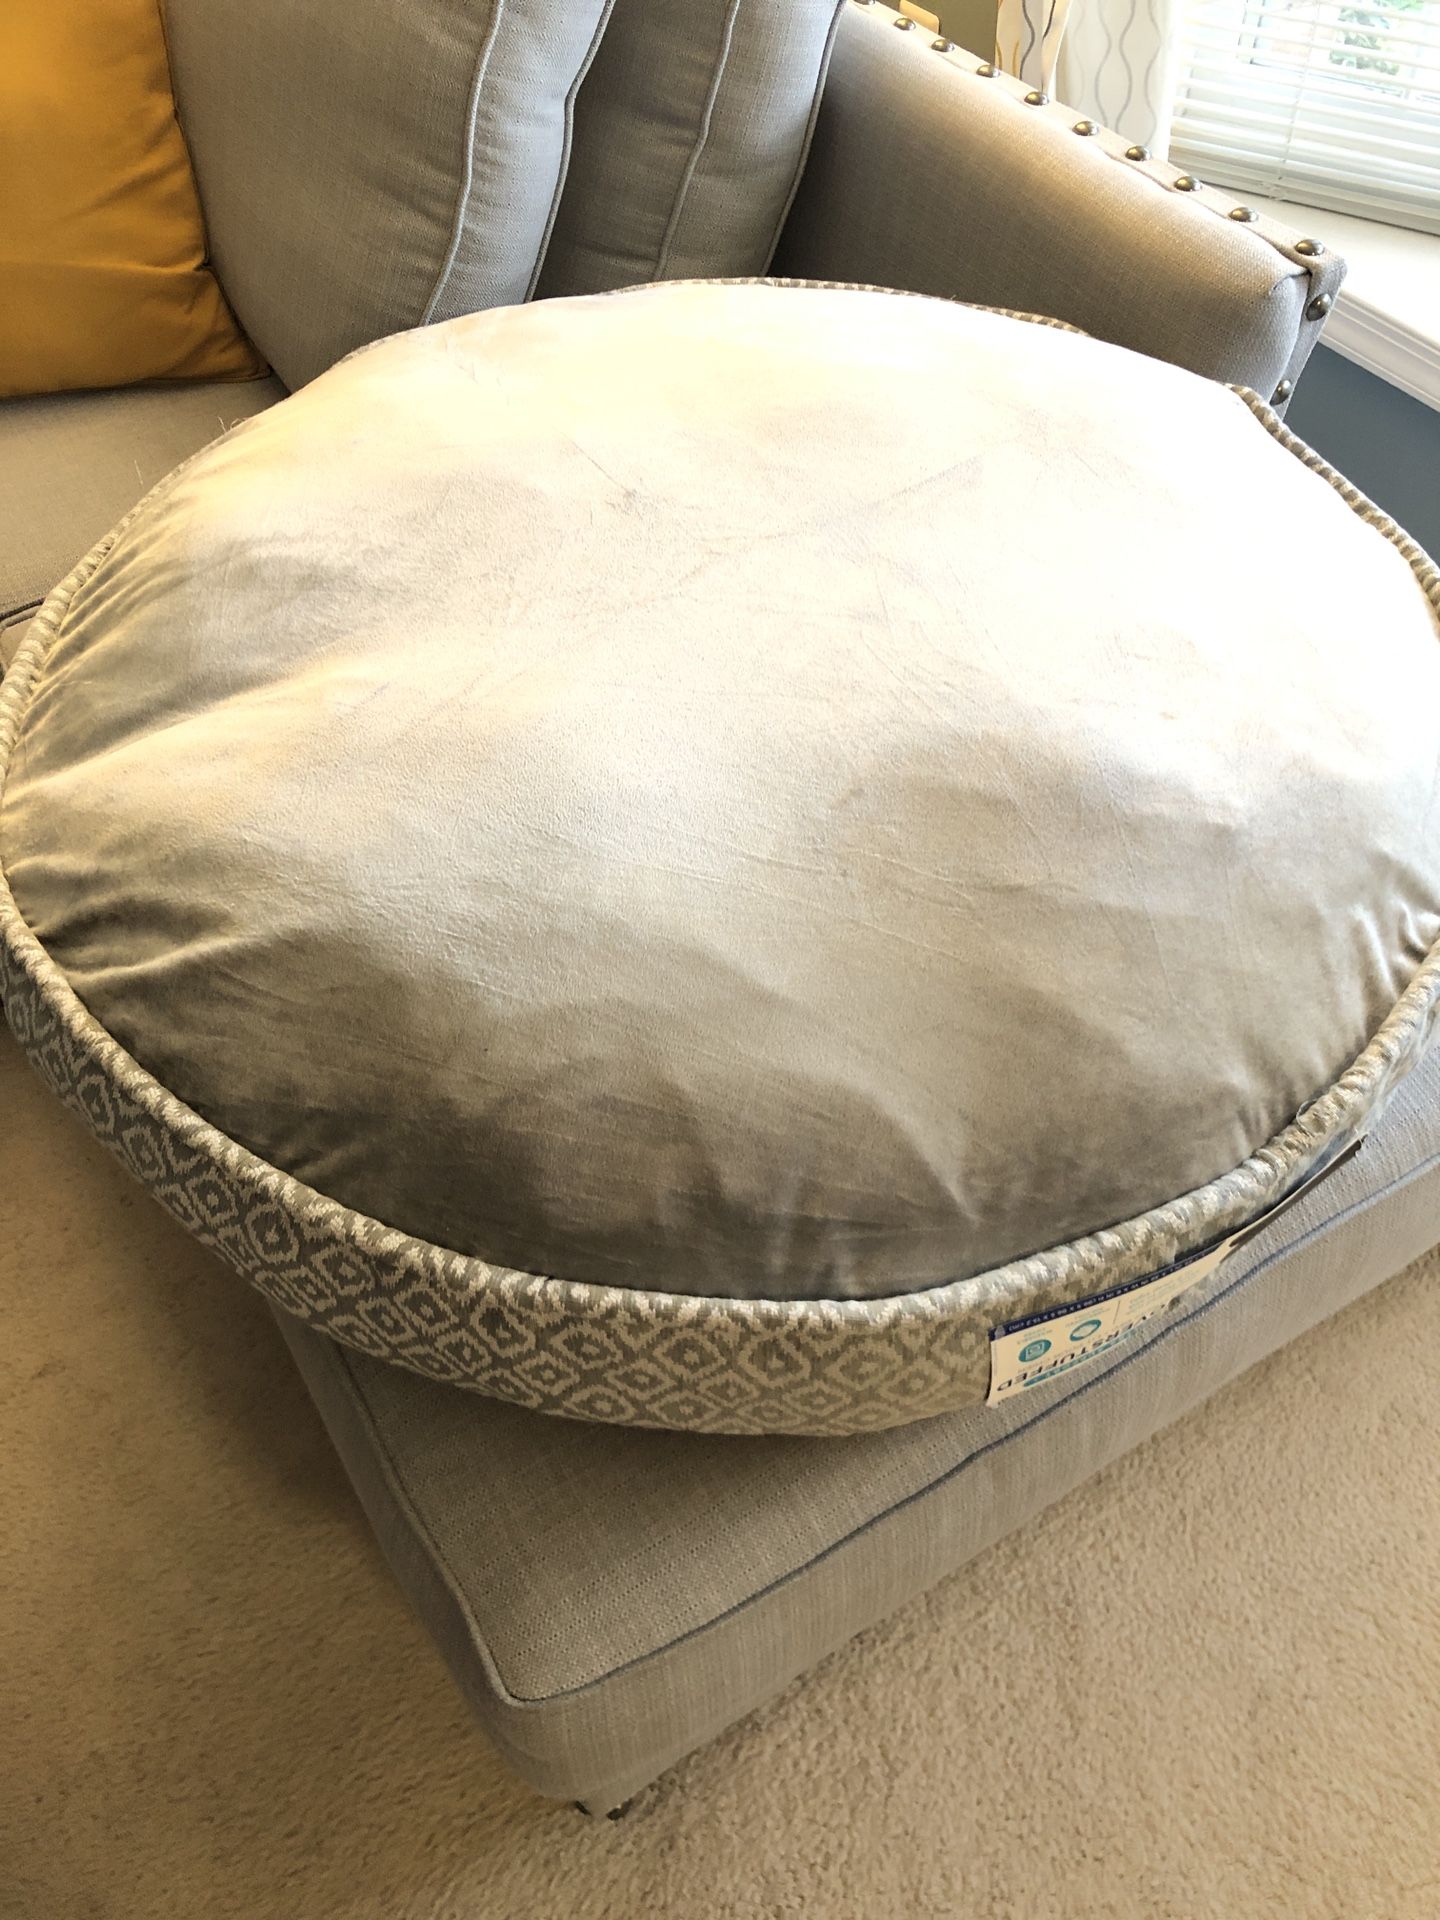 Large Round Dog Bed